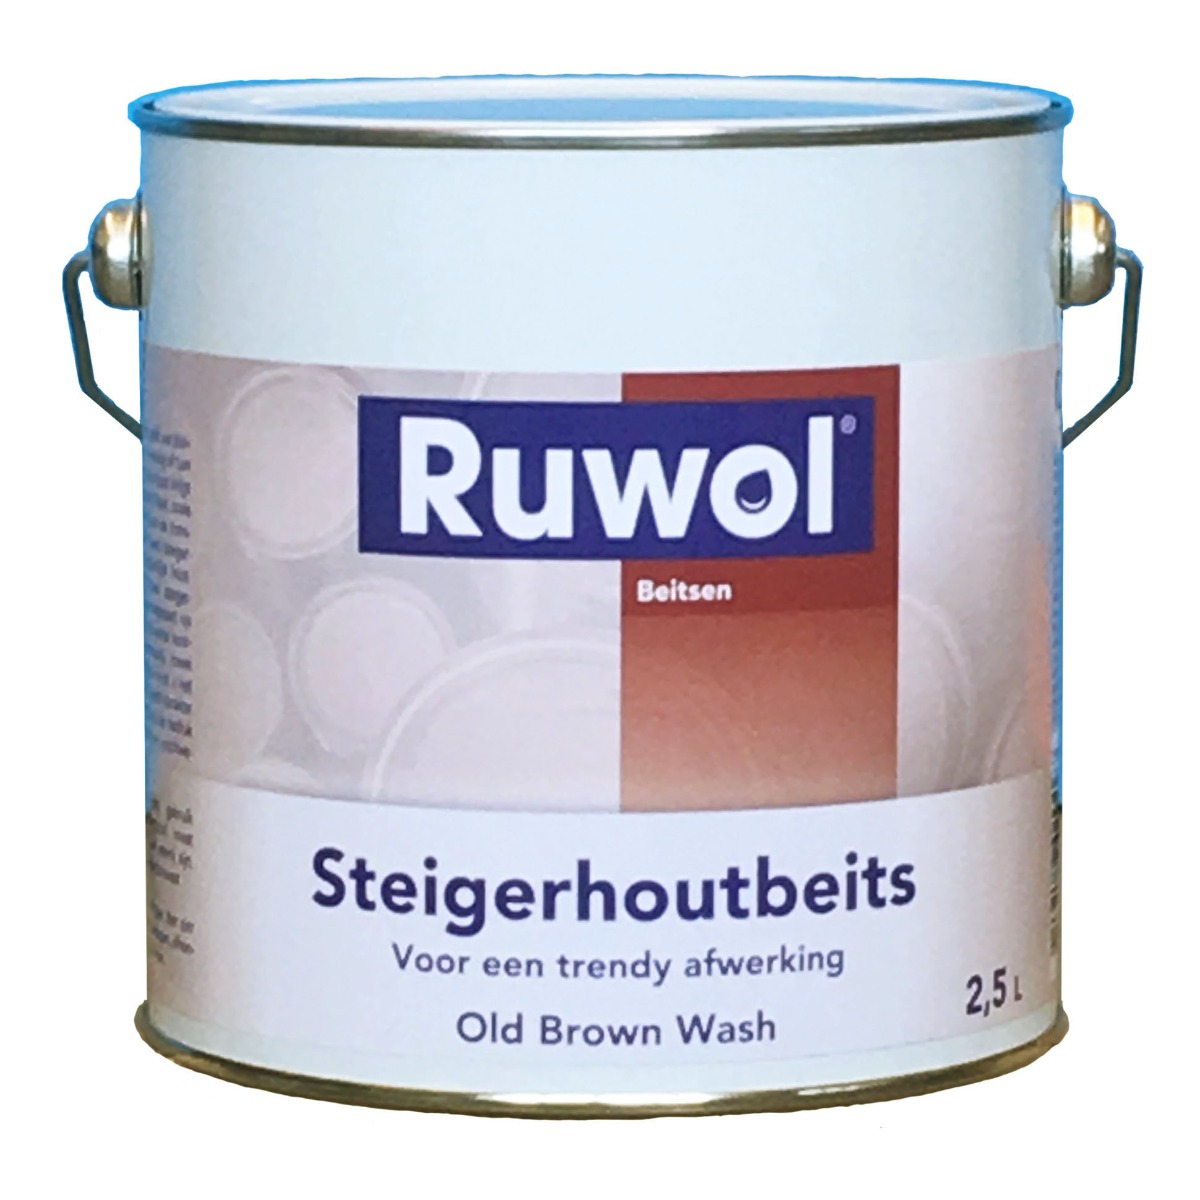 Ruwol Steigerhoutbeits Old Brown Wash 2,5 liter